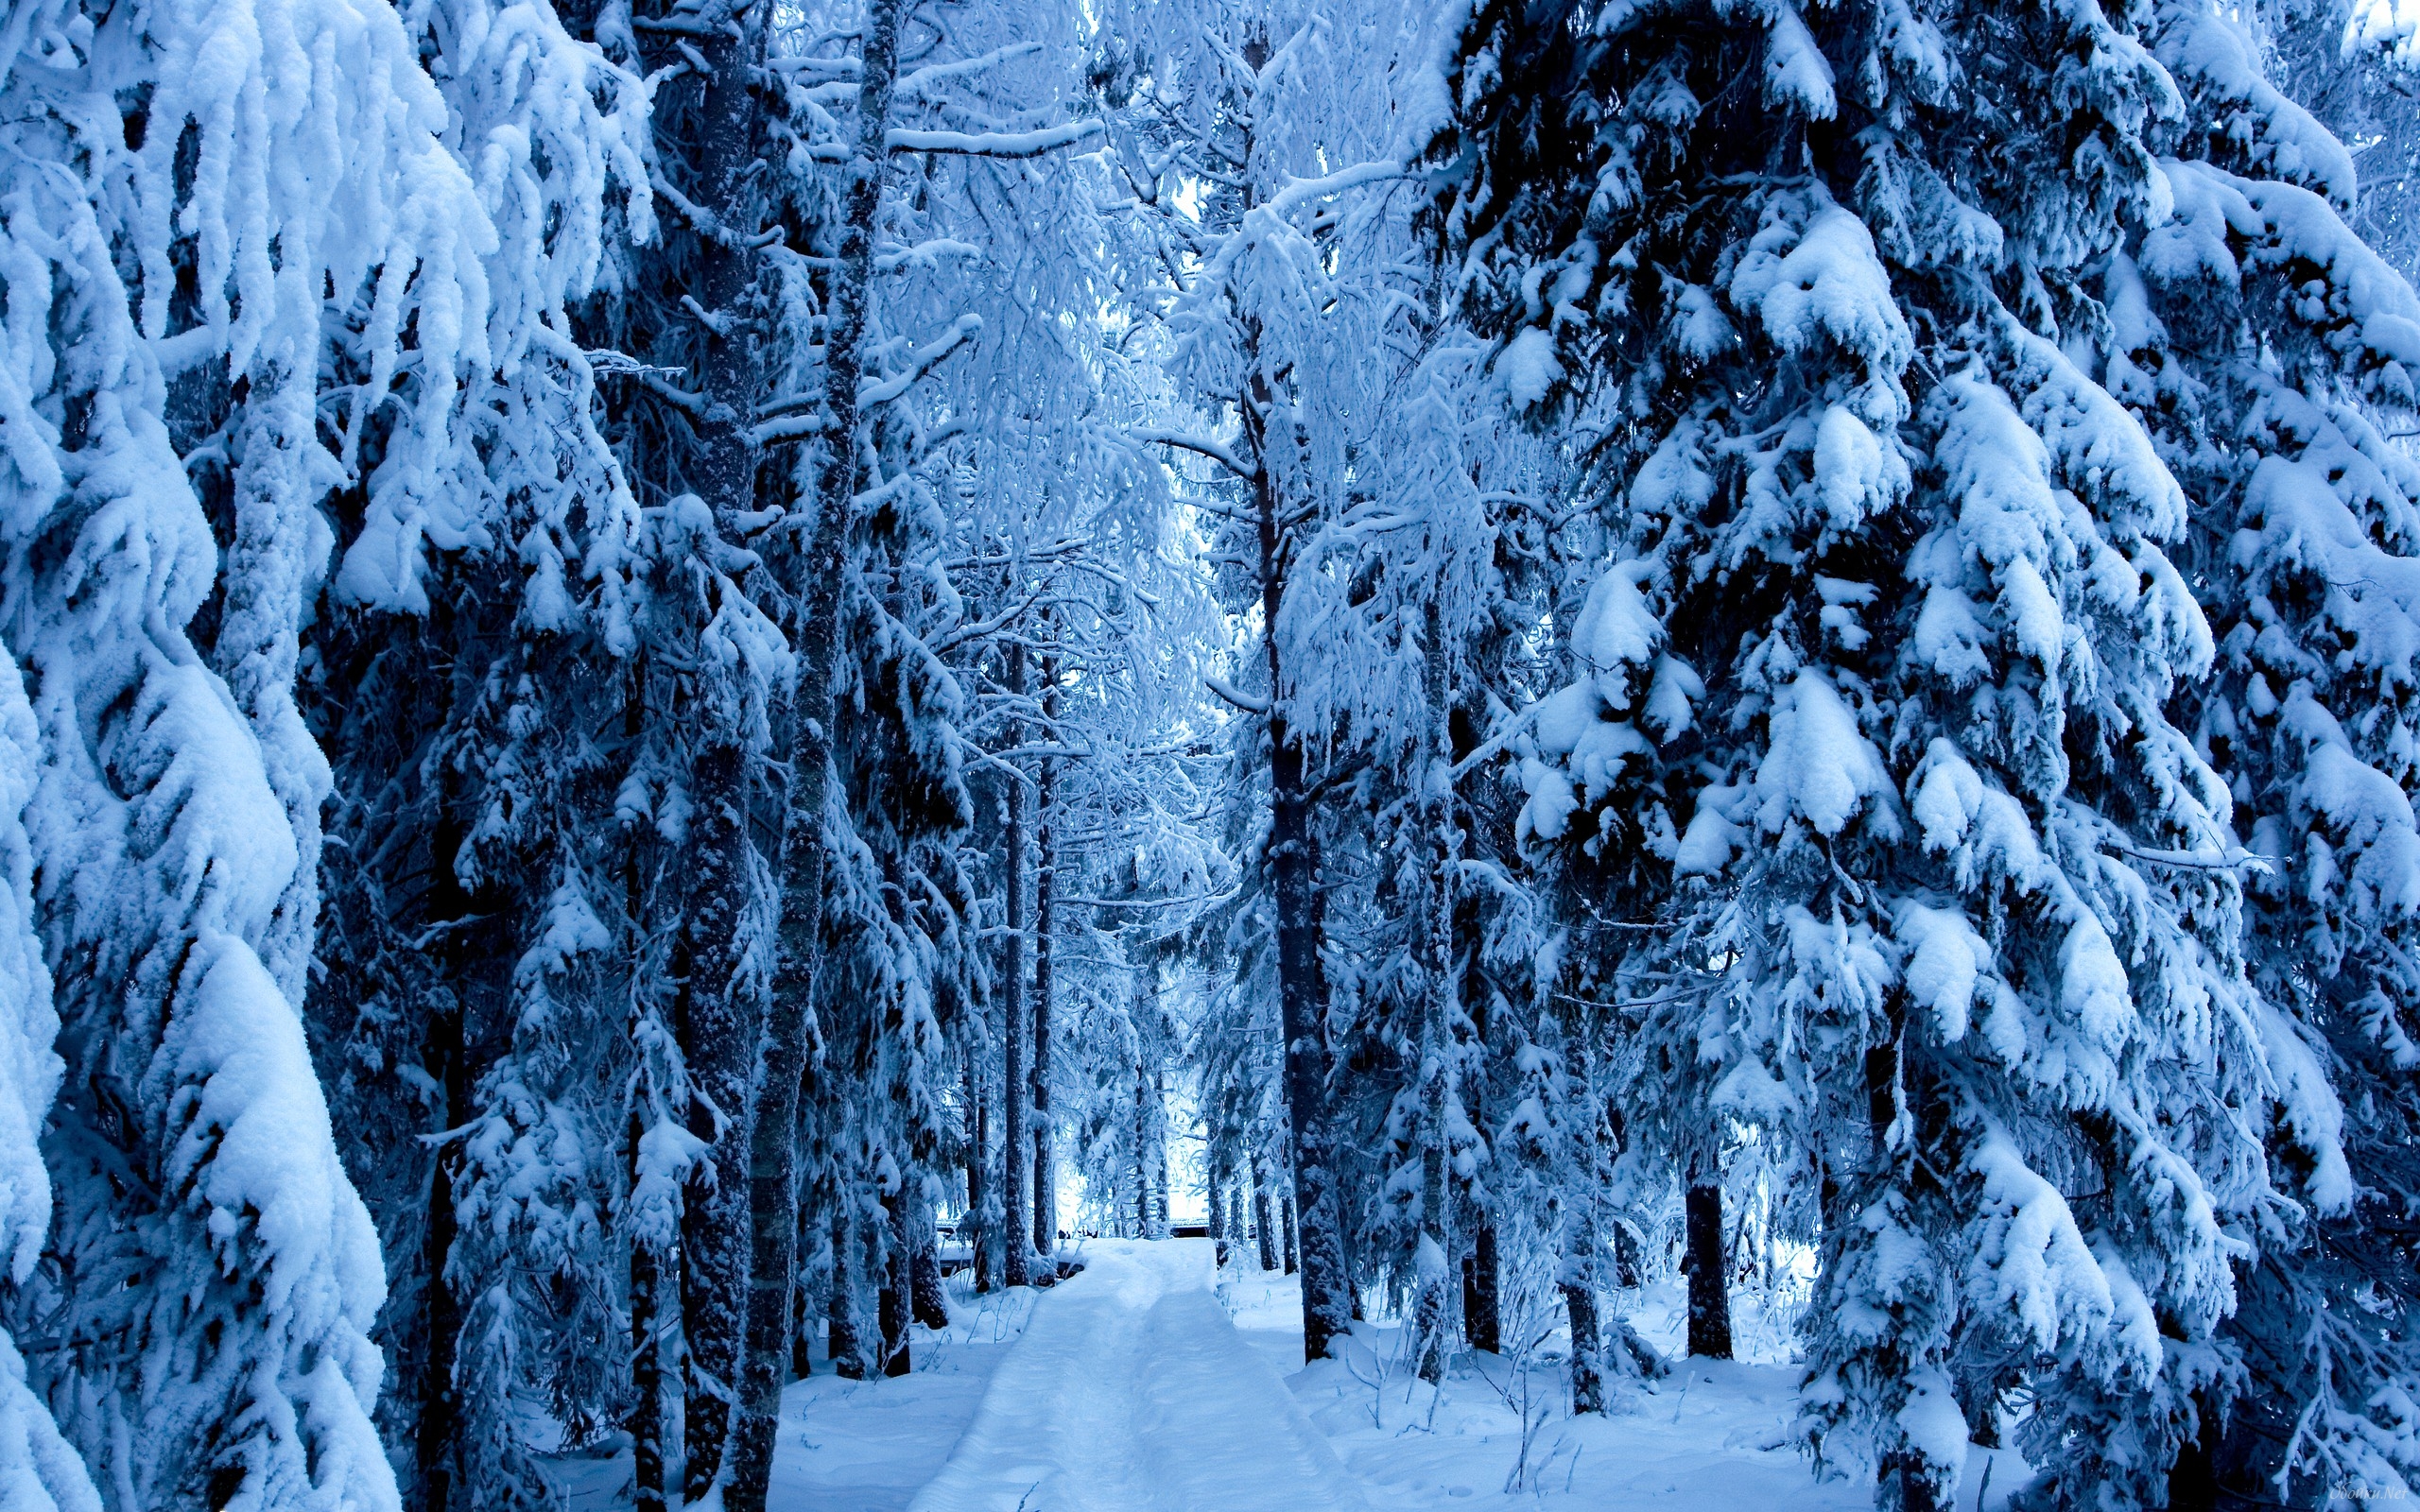  download Winter snowy forest wallpaper HD Desktop Wallpaper 2560x1600